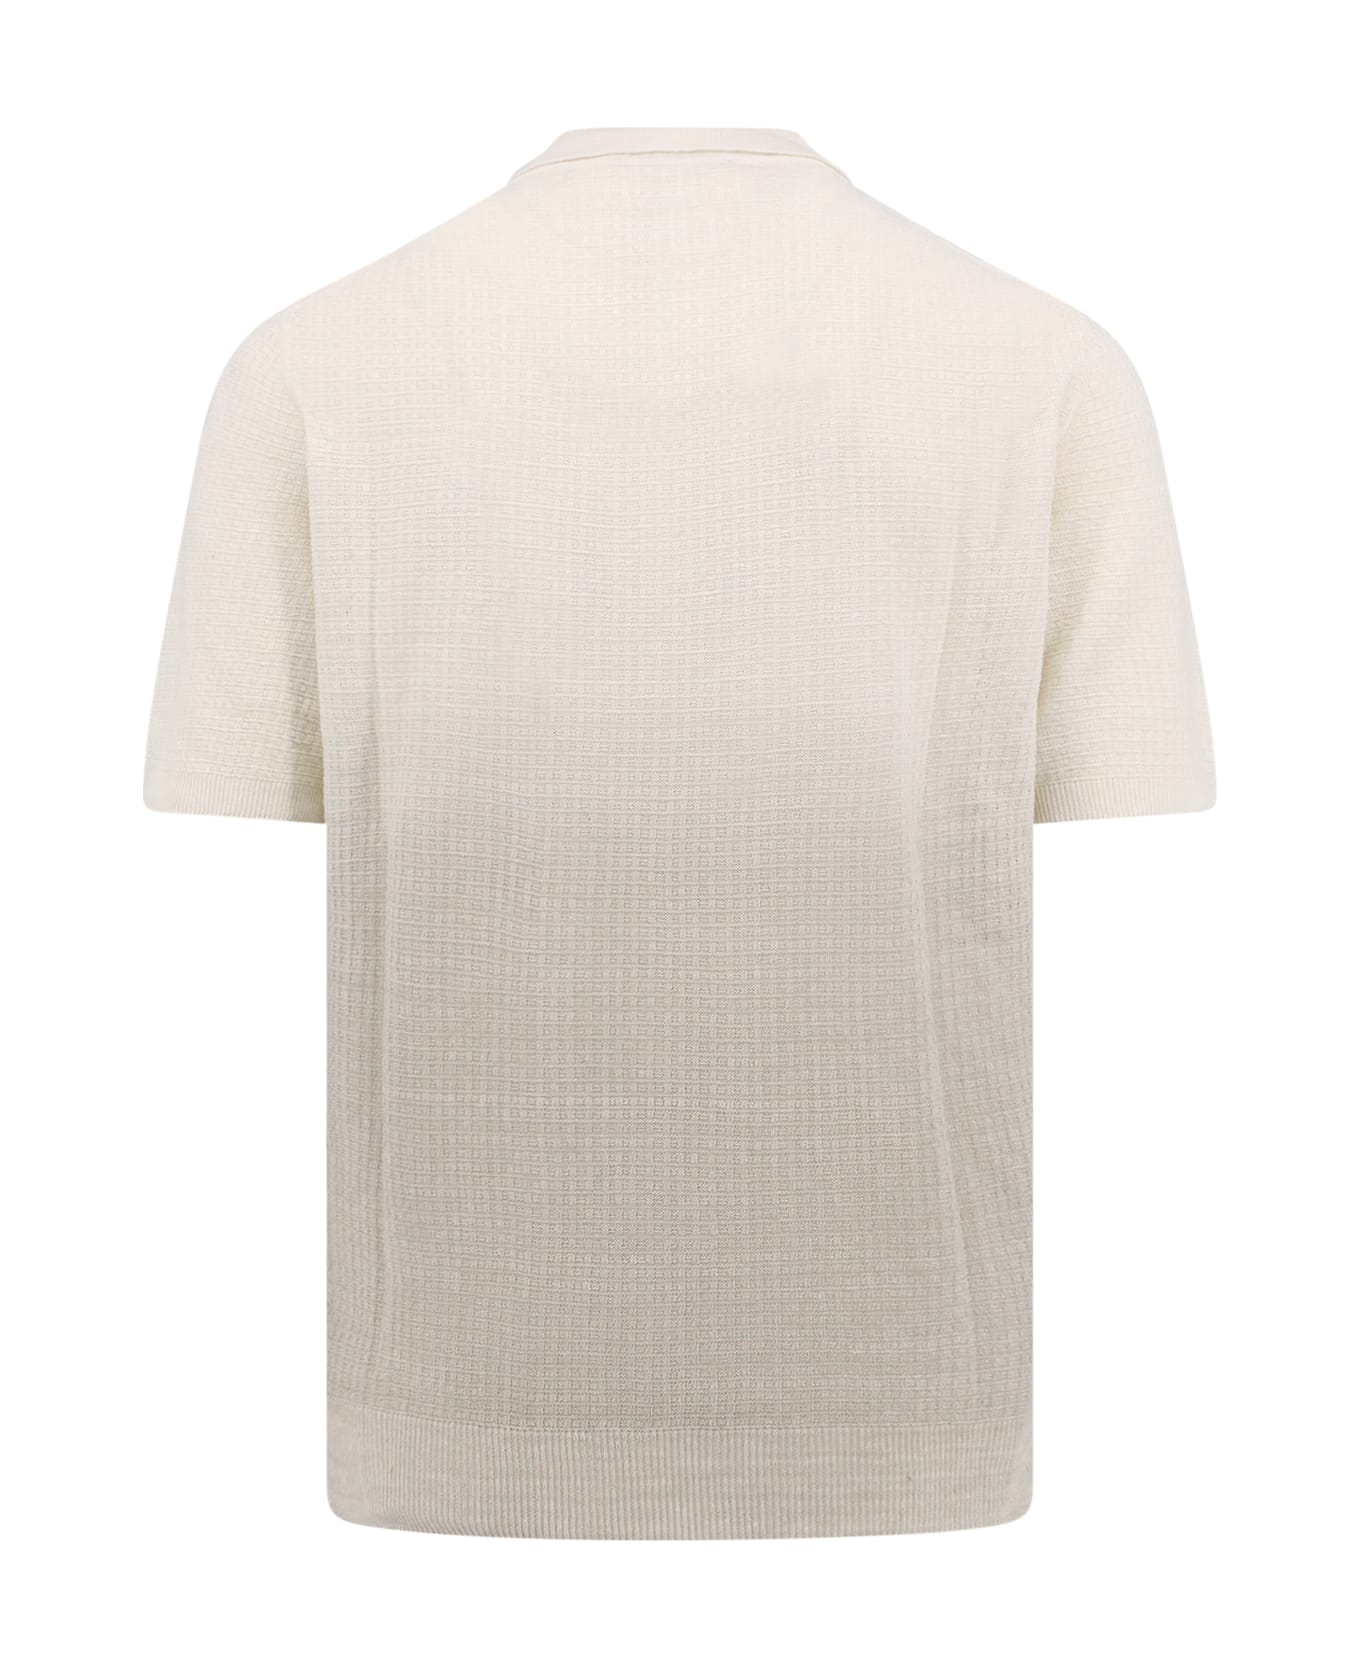 Corneliani Polo Shirt - White